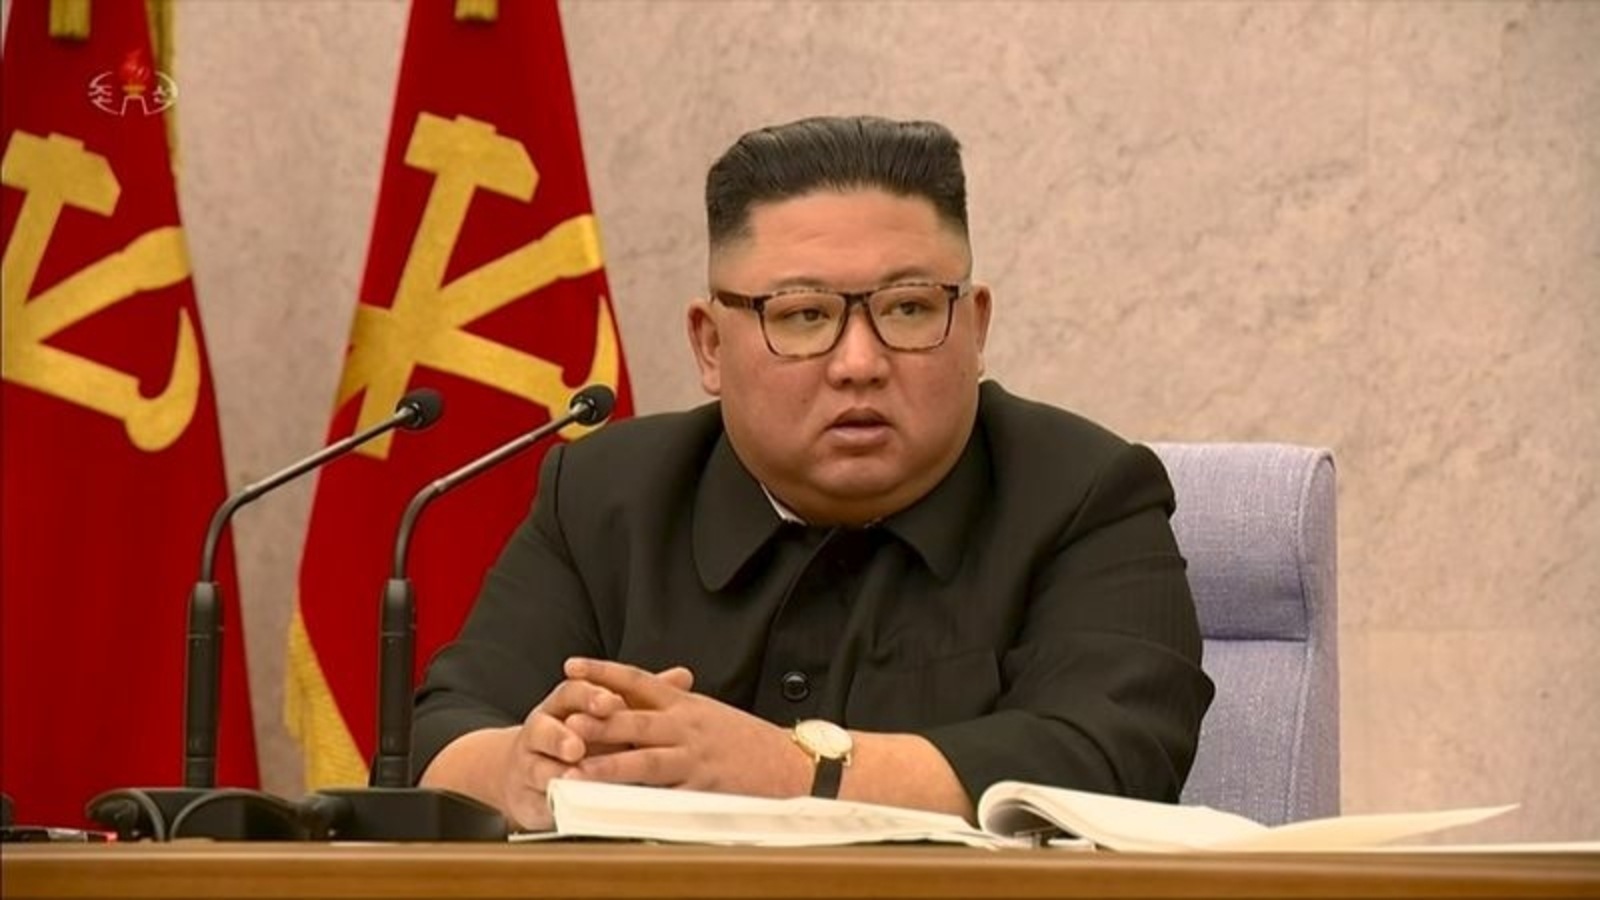 “그들은 깨닫지 만들 것”: 북한은 미국, 한국에 ‘적대 행위’에 대한 경고 | 월드 뉴스